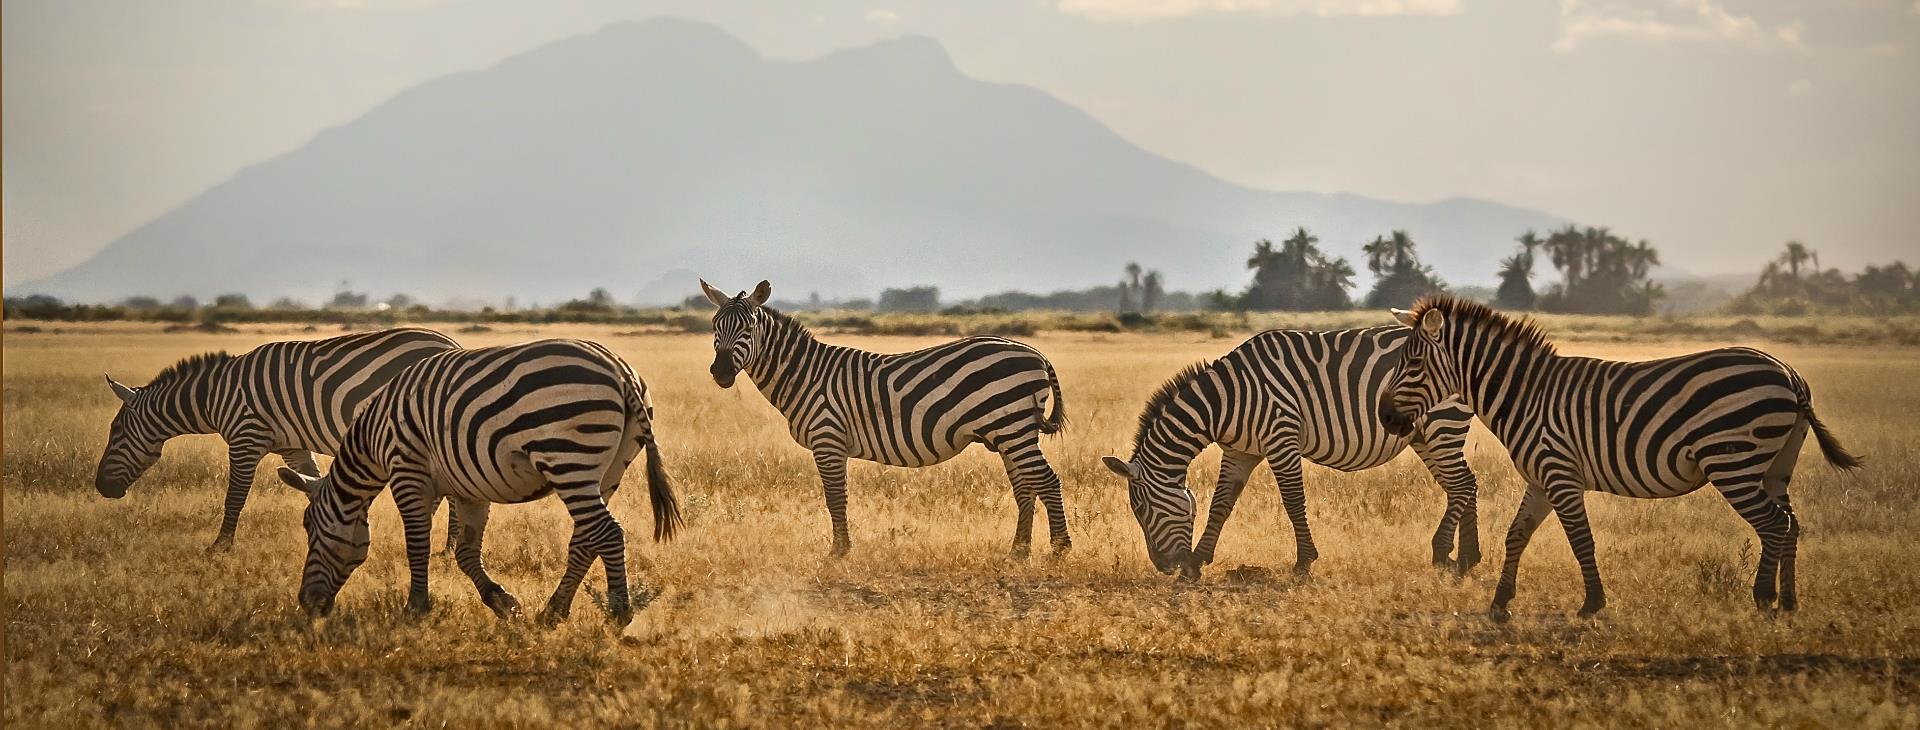 Safari Tanzania Kenia